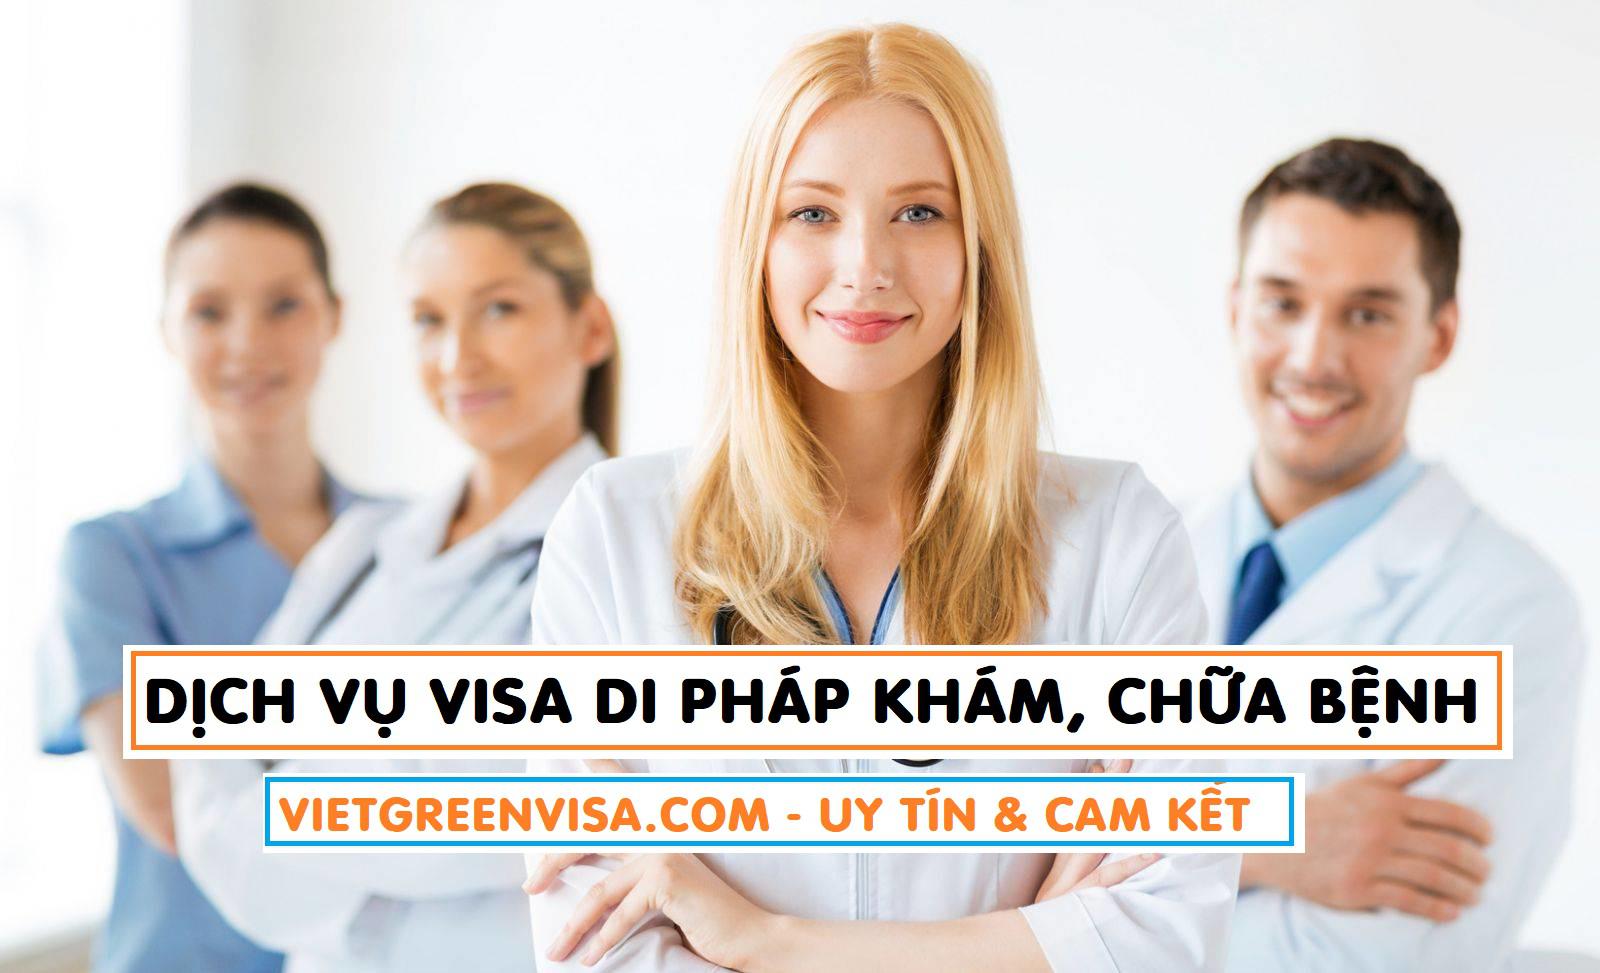 Dịch vụ xin visa đi Pháp khám chữa bệnh cao cấp + Dịch vụ Visa Pháp cao cấp